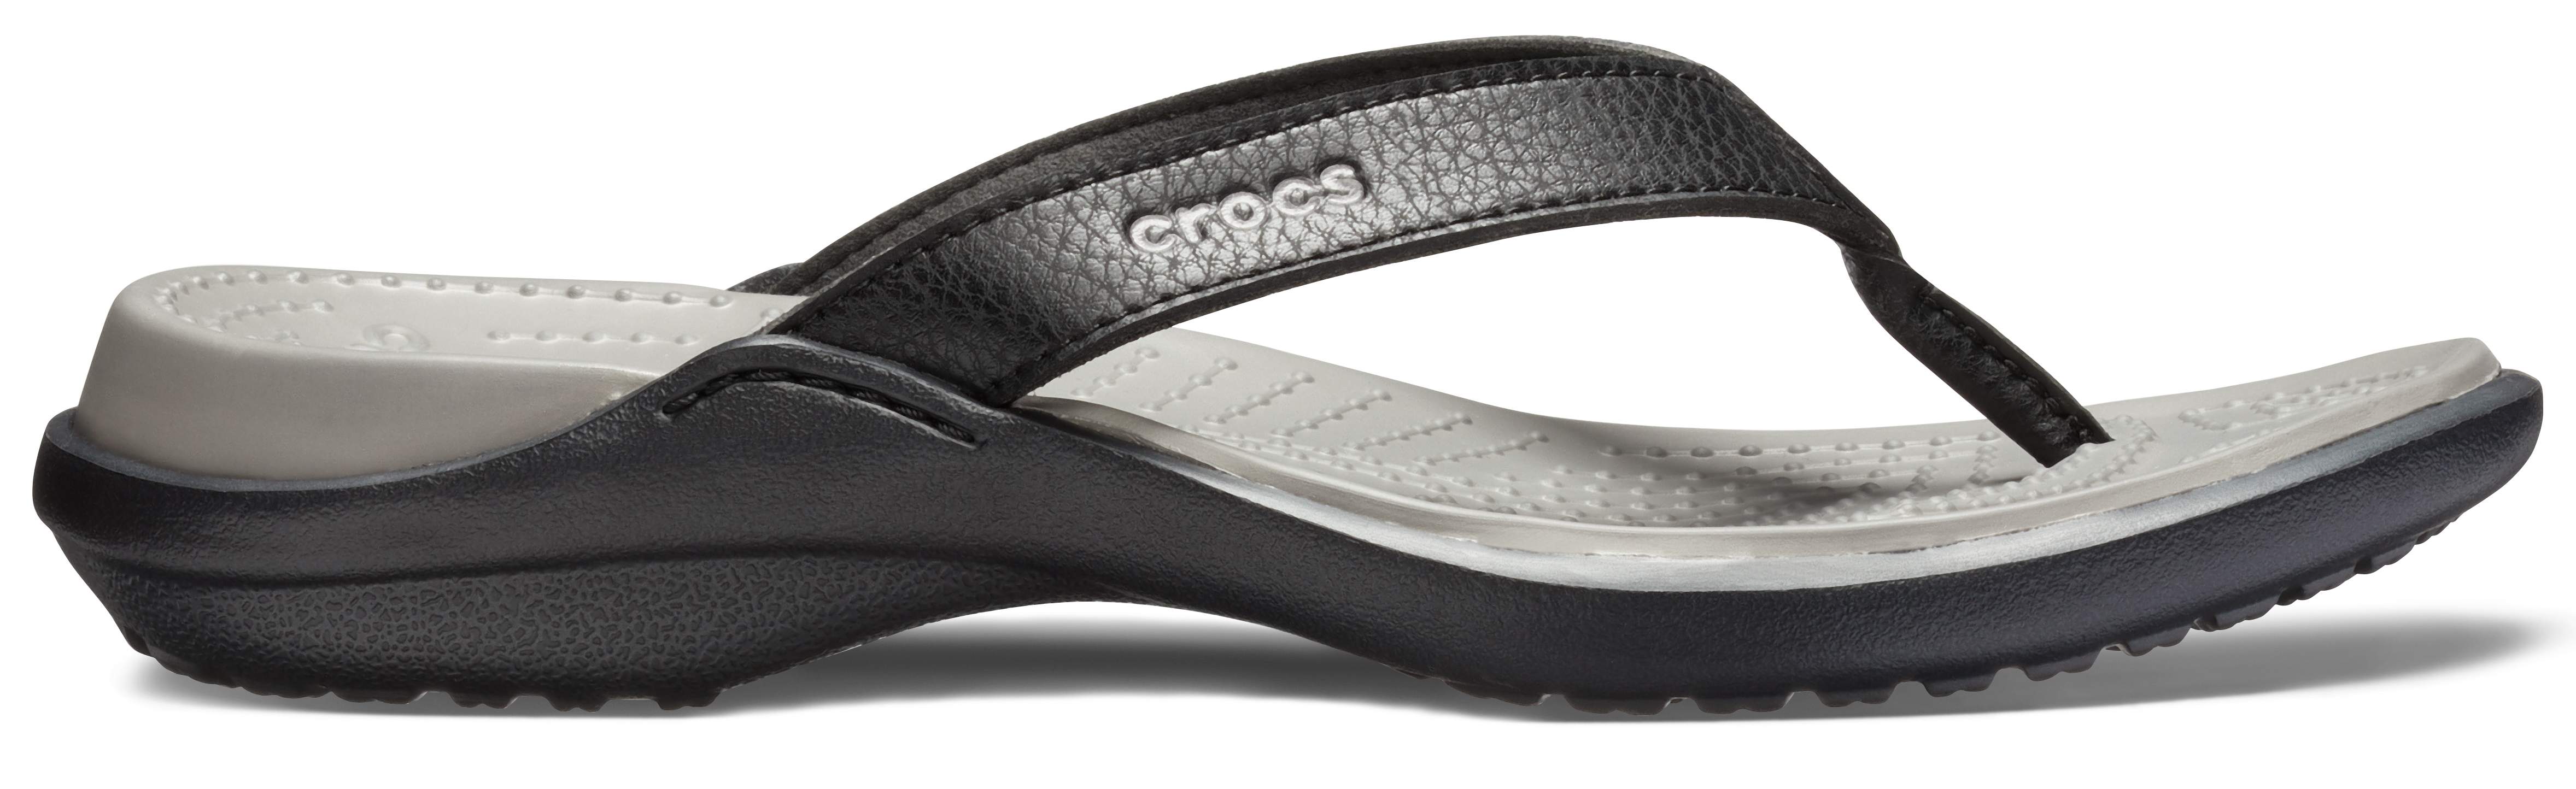 crocs capri sandals